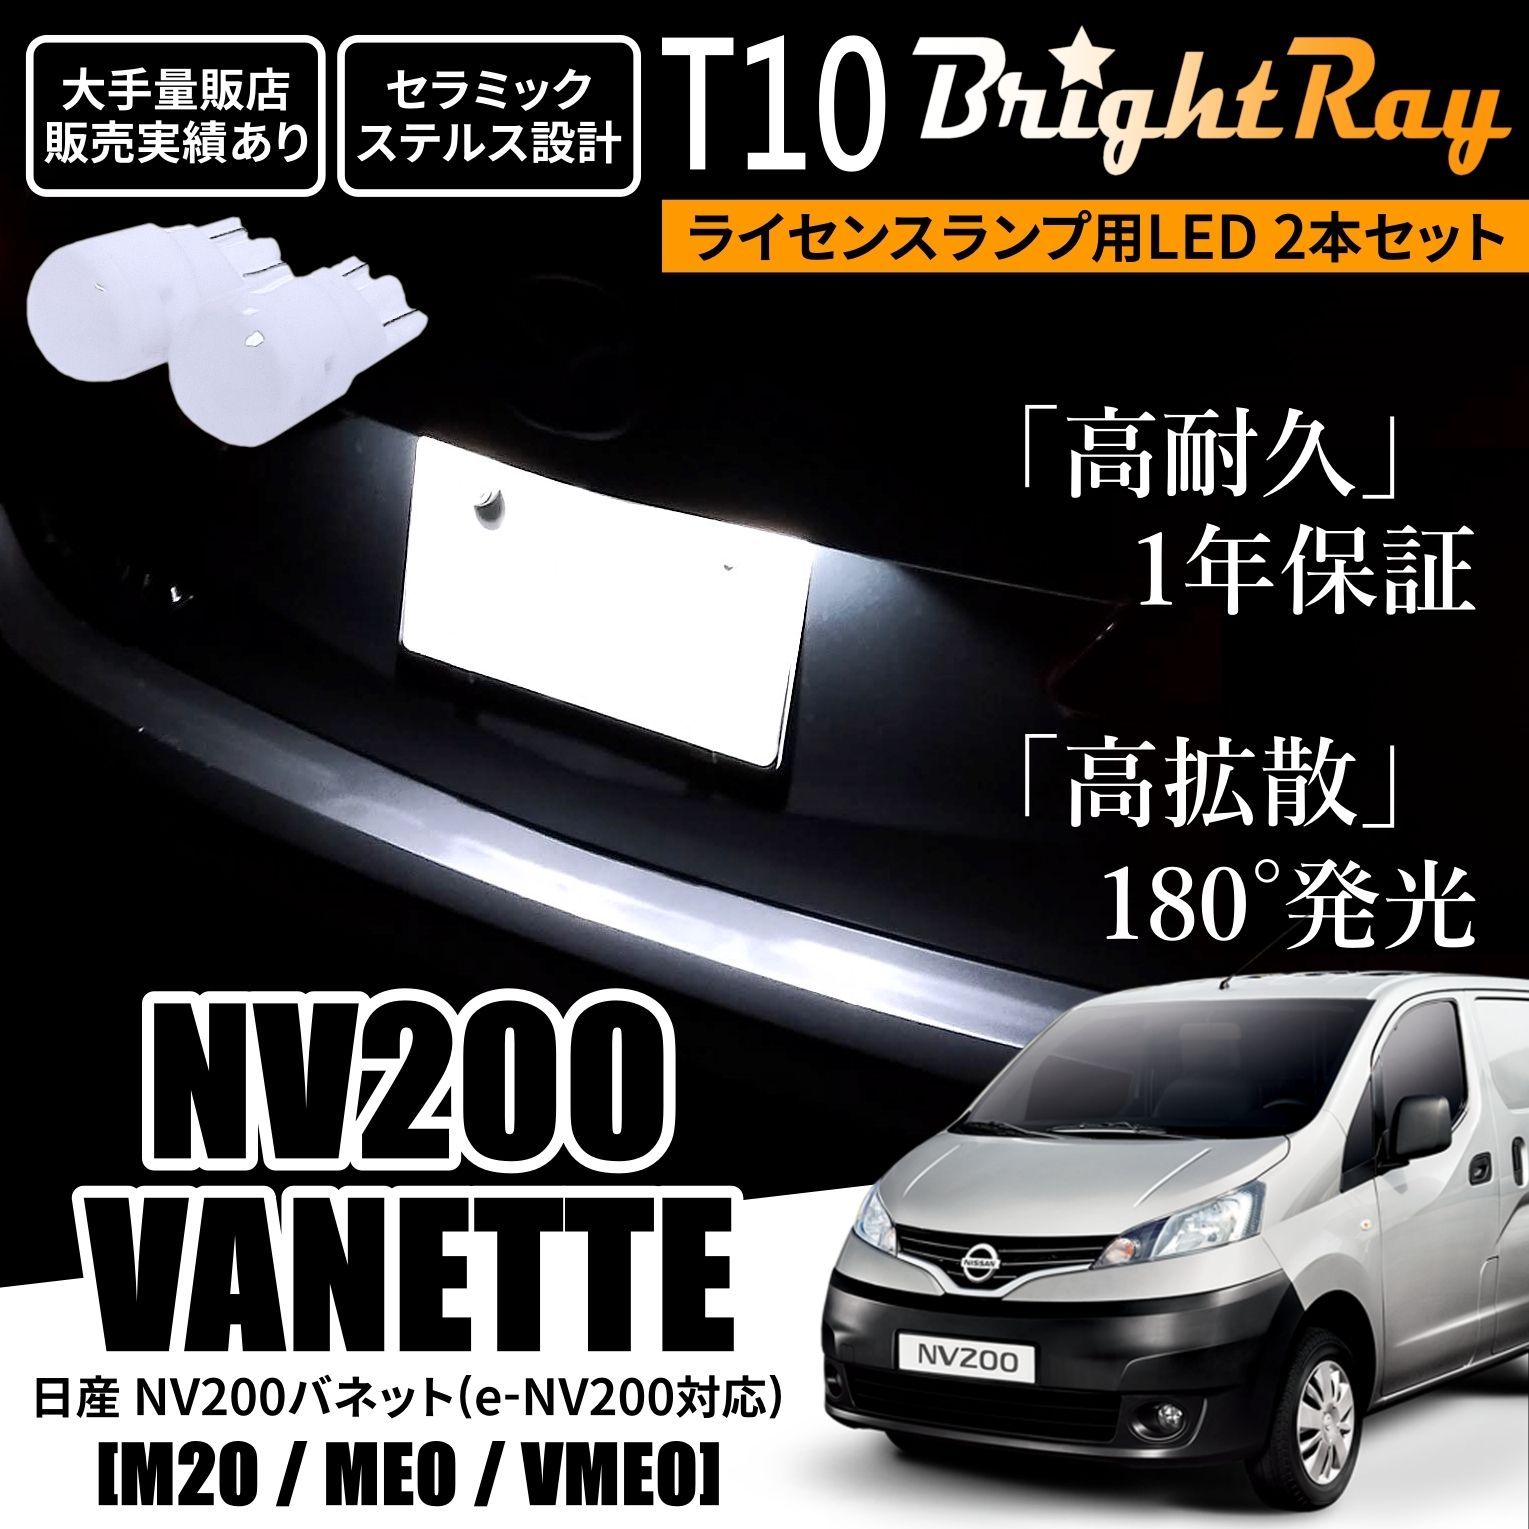 日産 NV200 バネット M20 ME0 VME0 T10 LED ナンバー灯